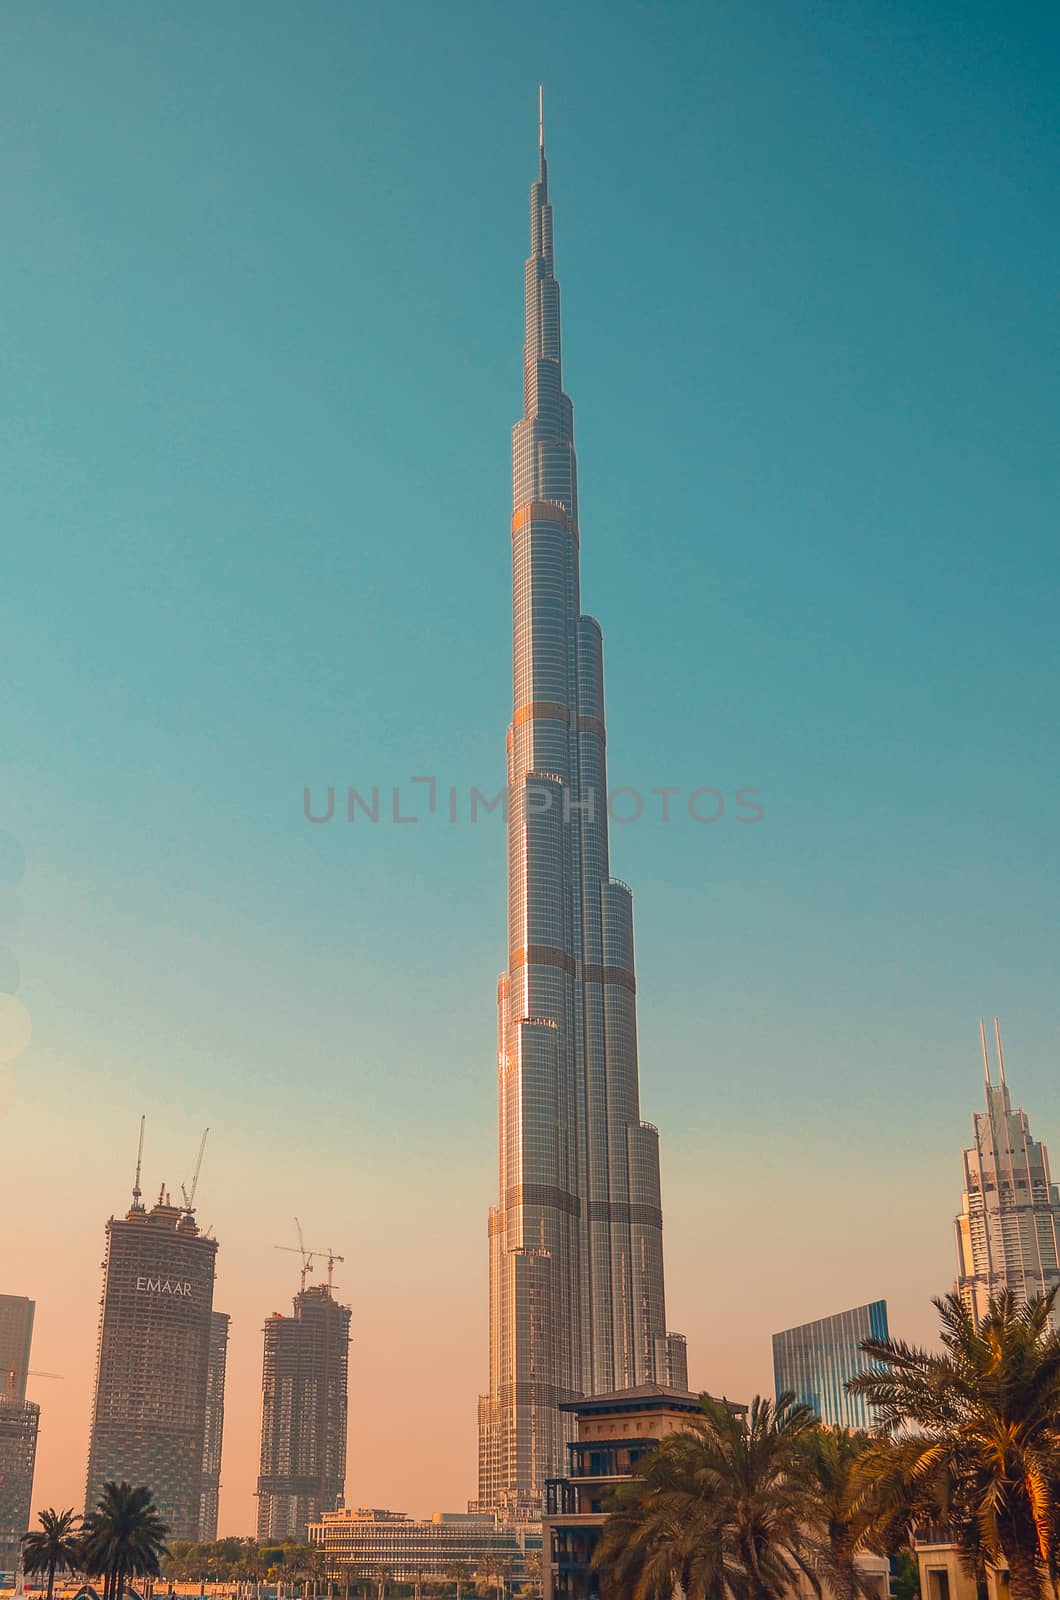 skyscraper Burj Khalifa - the tallest structure and building in the world. Dubai, UAE